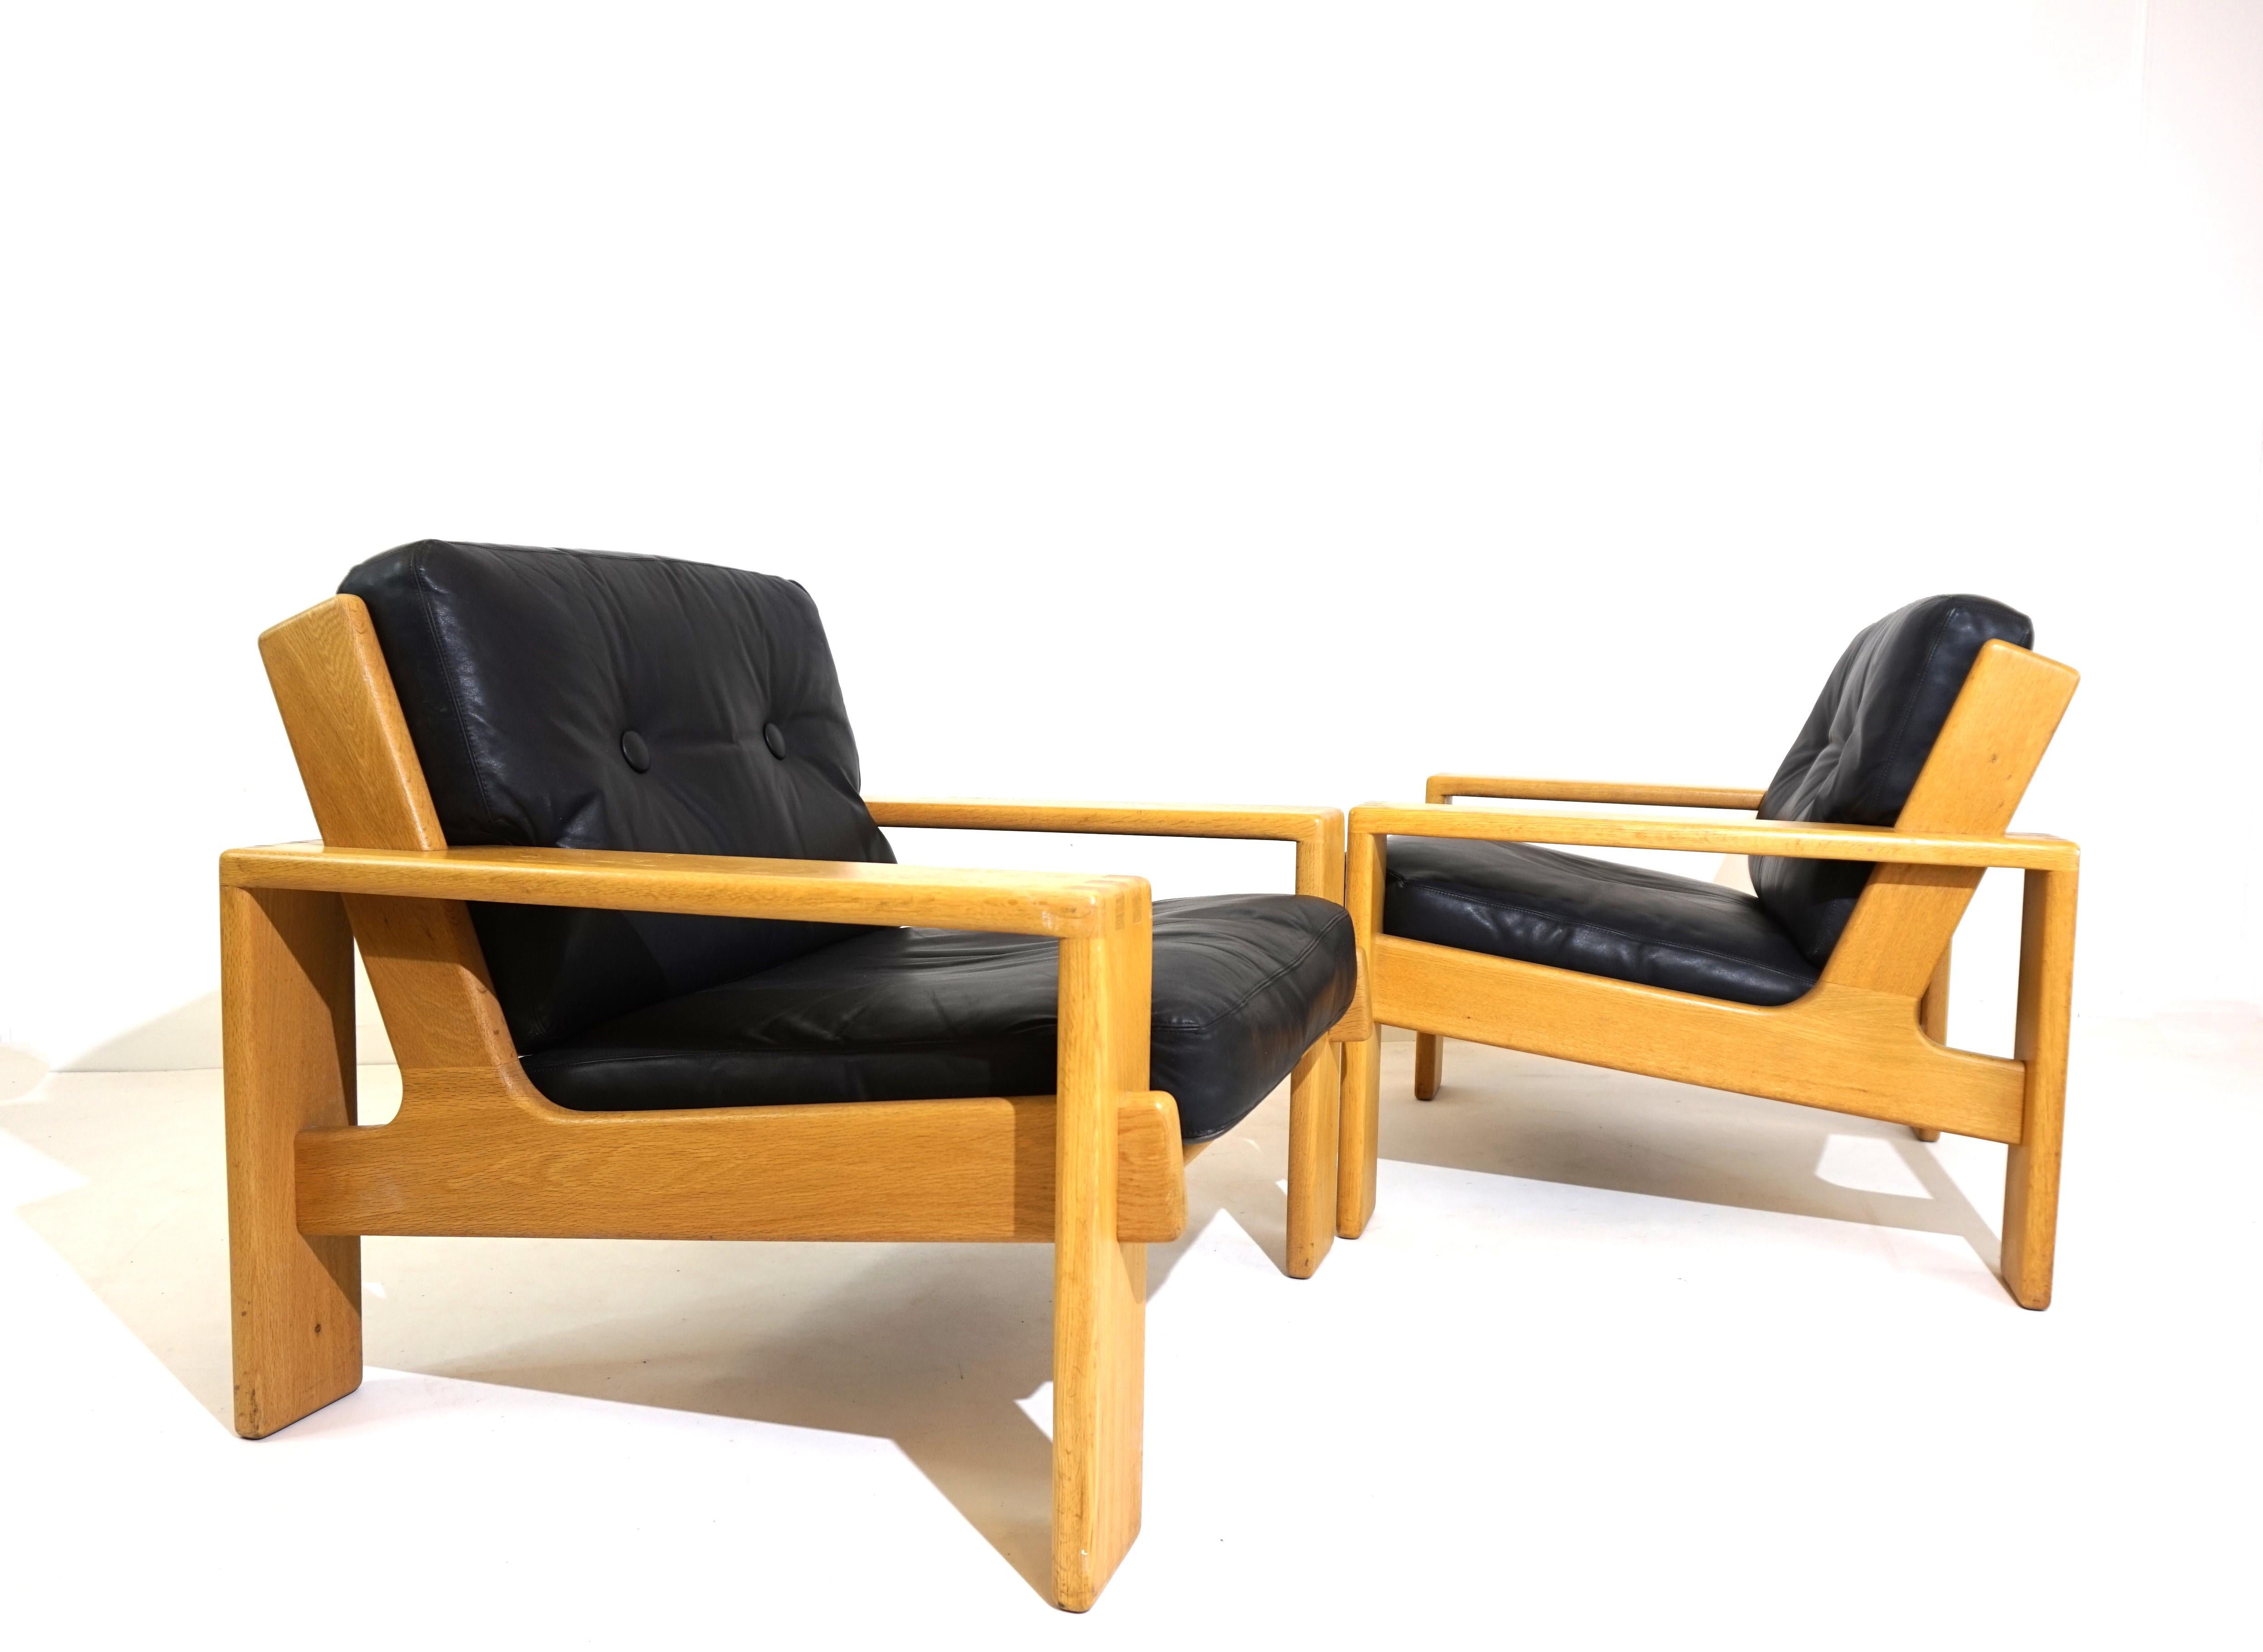 Deux fauteuils Bonanza des années 60 dans une belle combinaison de cuir noir et de cadre en bois clair. Les fauteuils présentent des signes minimes d'usure du cuir, le cuir épais est doux et souple. Les cadres en bois sont en parfait état. Les